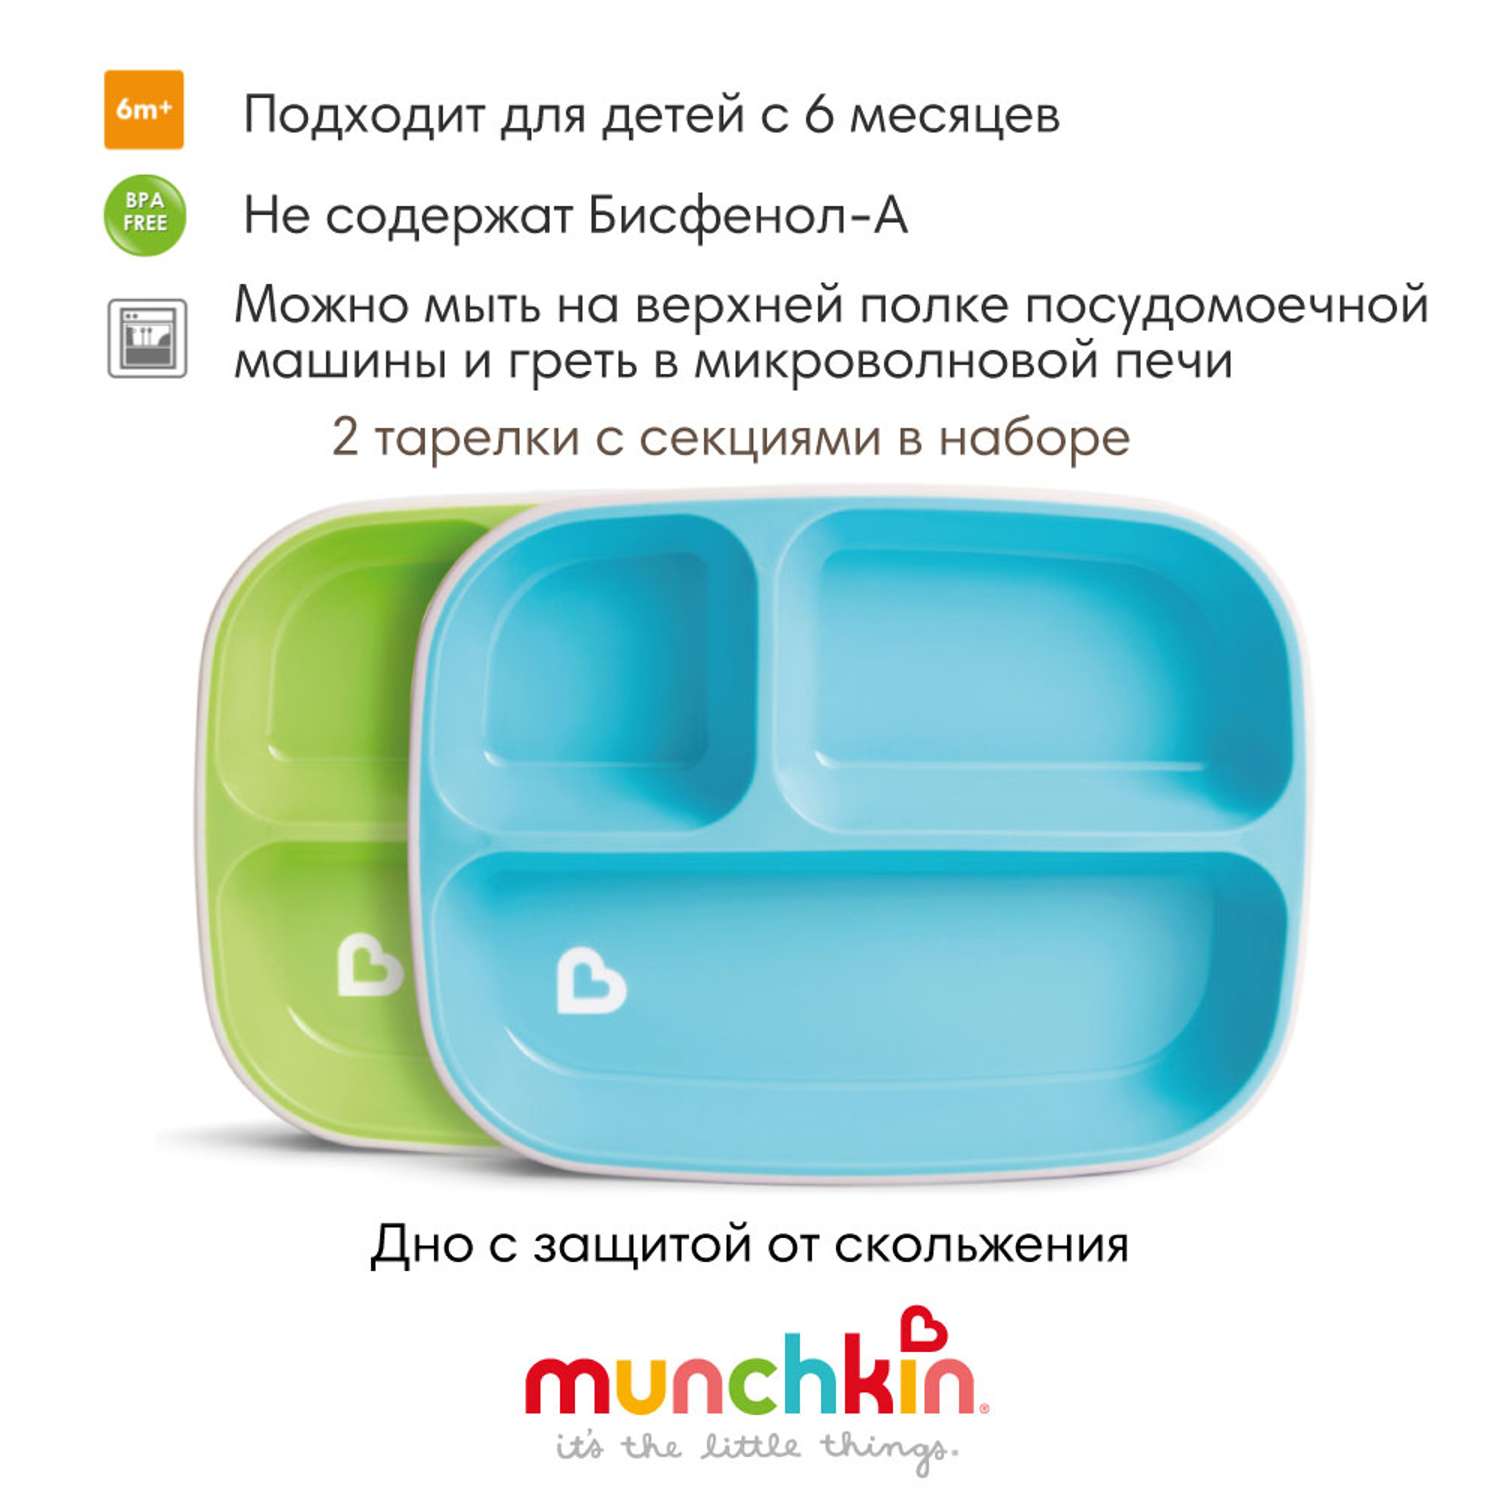 Тарелки Munchkin детские секционные Splash набор 2шт. голубая зеленая - фото 2